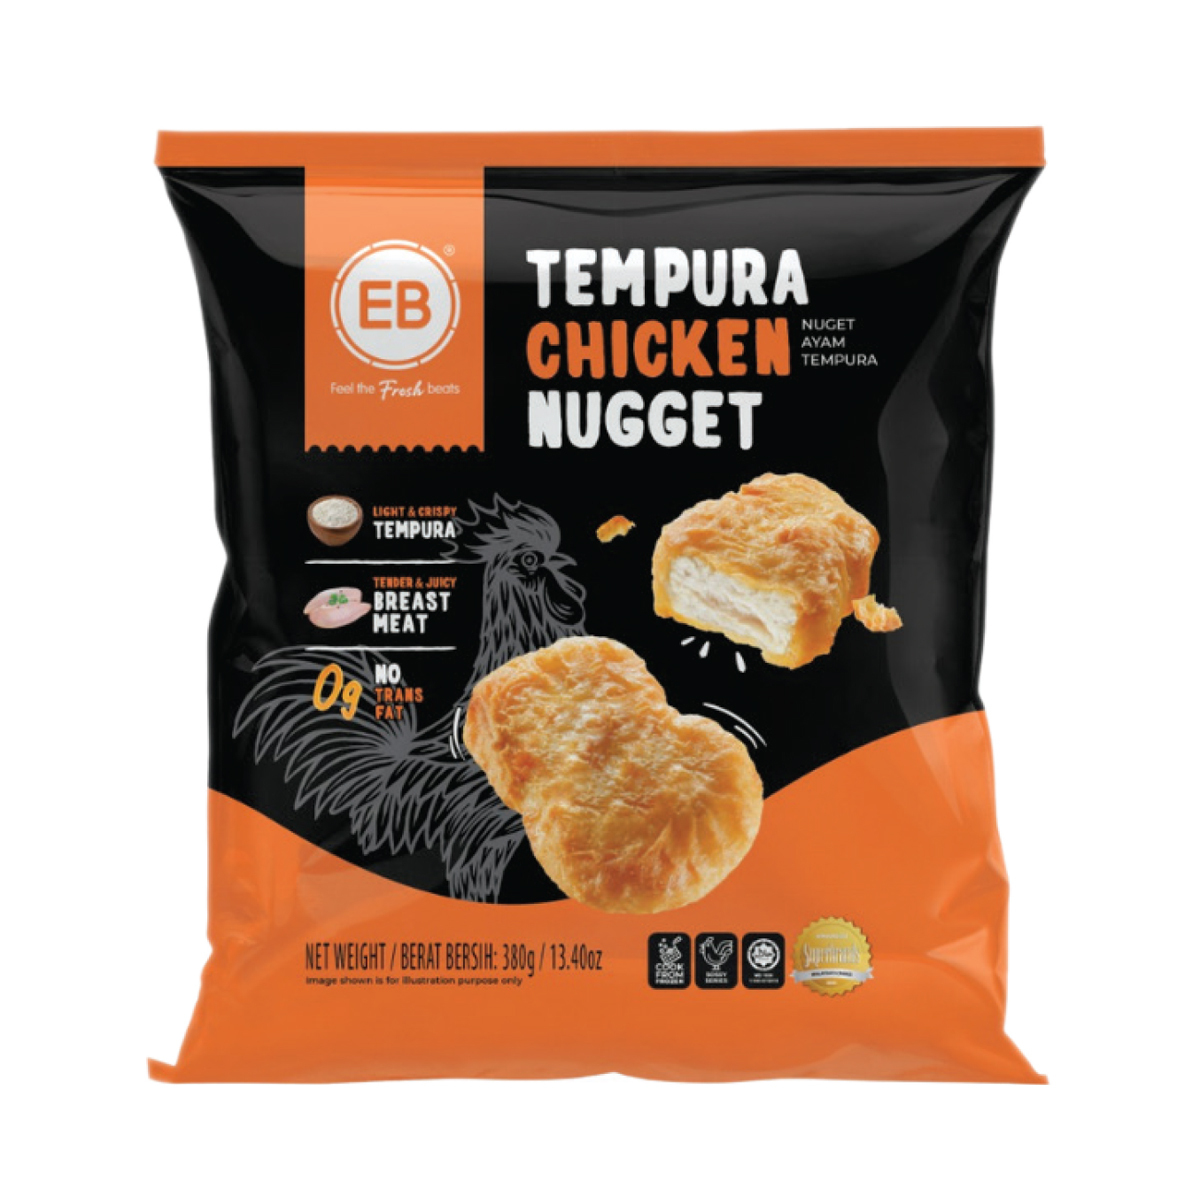 Everbest Tempura Chicken Nugget 380g